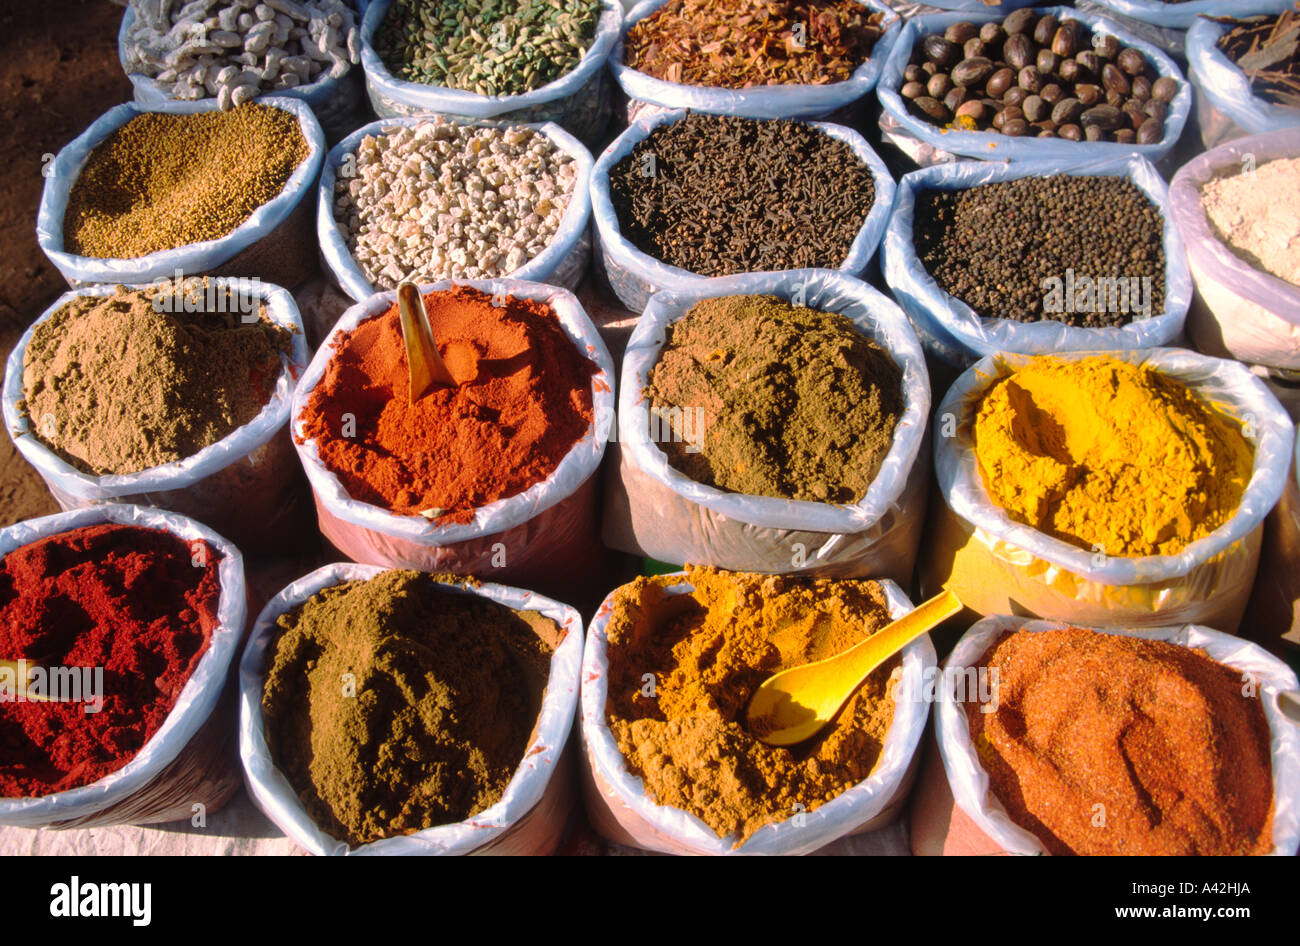 India Goa Mapsa market curry spices Stock Photo